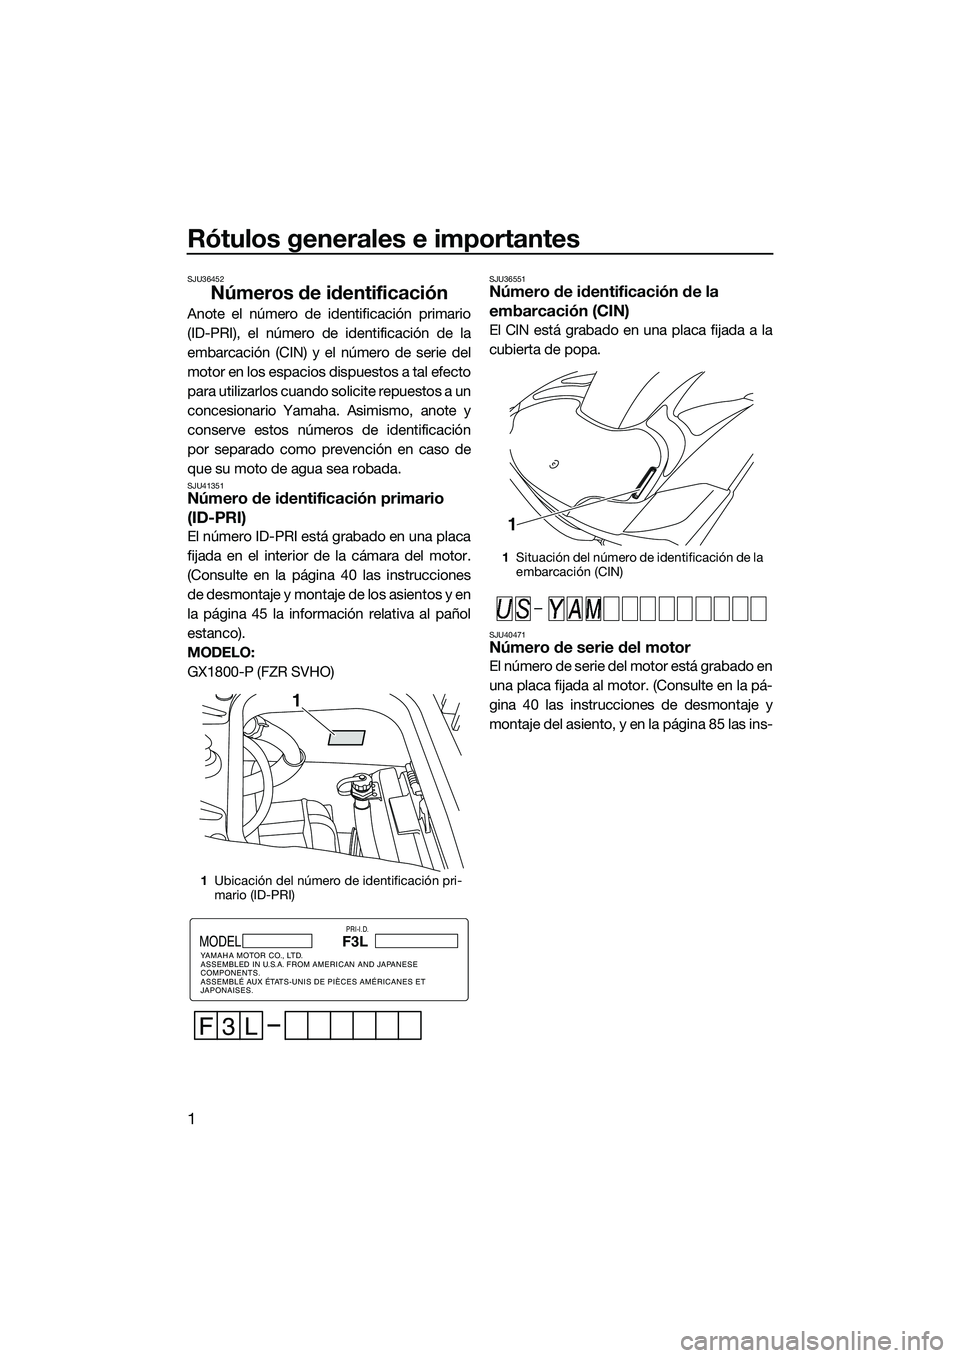 YAMAHA FZR SVHO 2015  Manuale de Empleo (in Spanish) Rótulos generales e importantes
1
SJU36452
Números de identificación
Anote el número de identificación primario
(ID-PRI), el número de identificación de la
embarcación (CIN) y el número de se